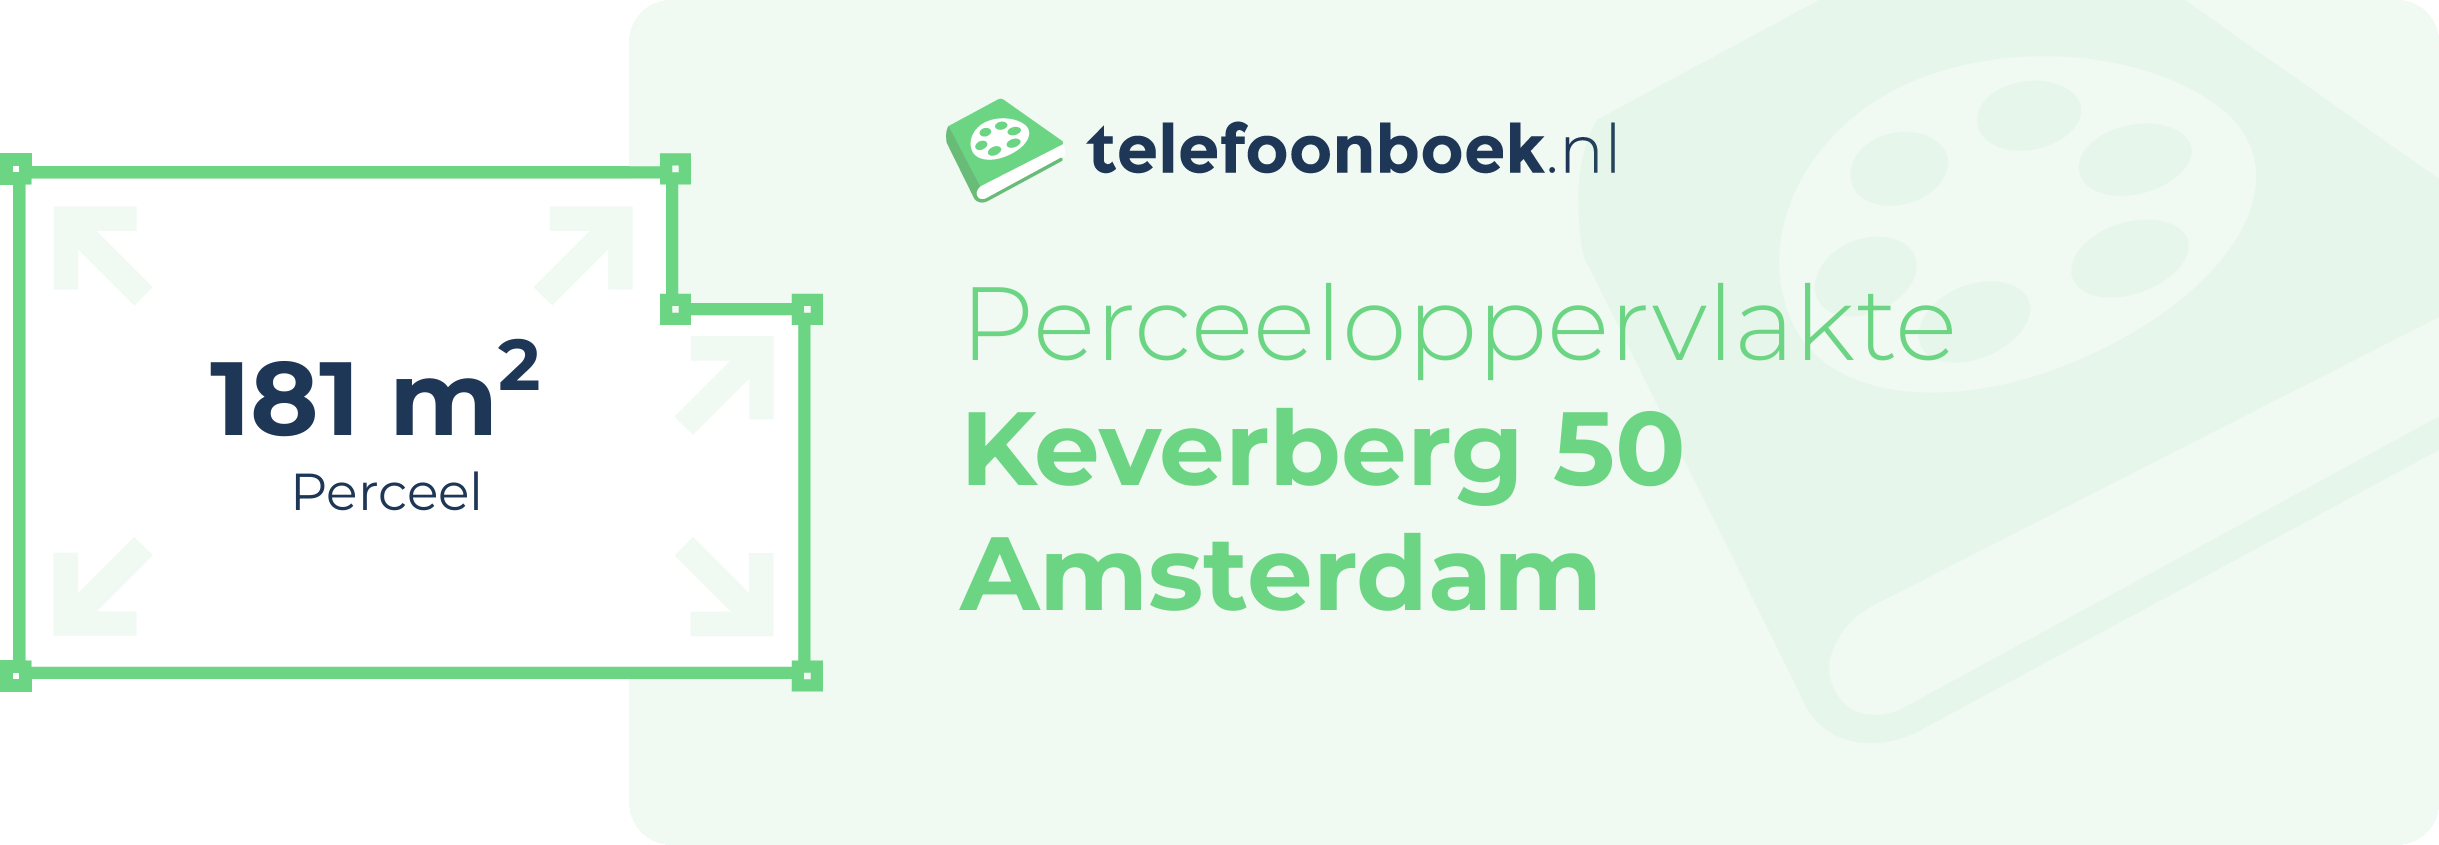 Perceeloppervlakte Keverberg 50 Amsterdam